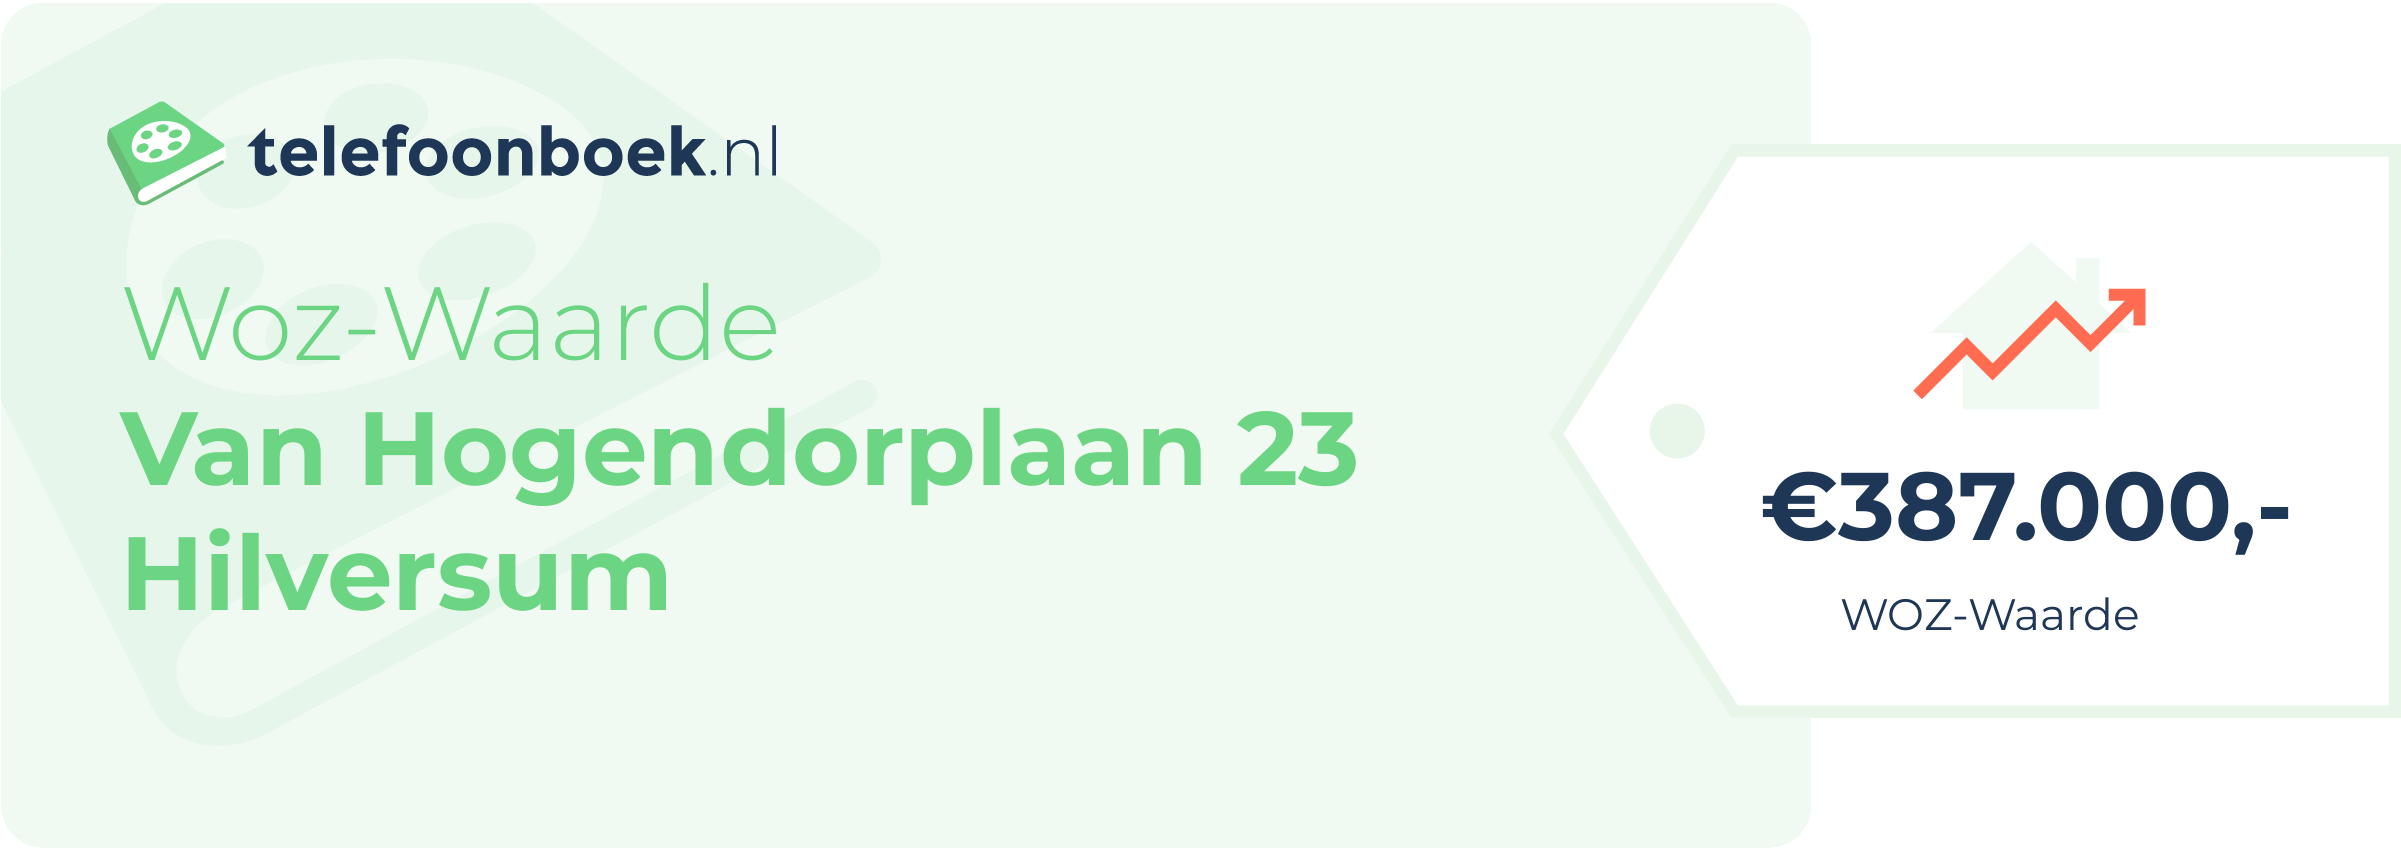 WOZ-waarde Van Hogendorplaan 23 Hilversum